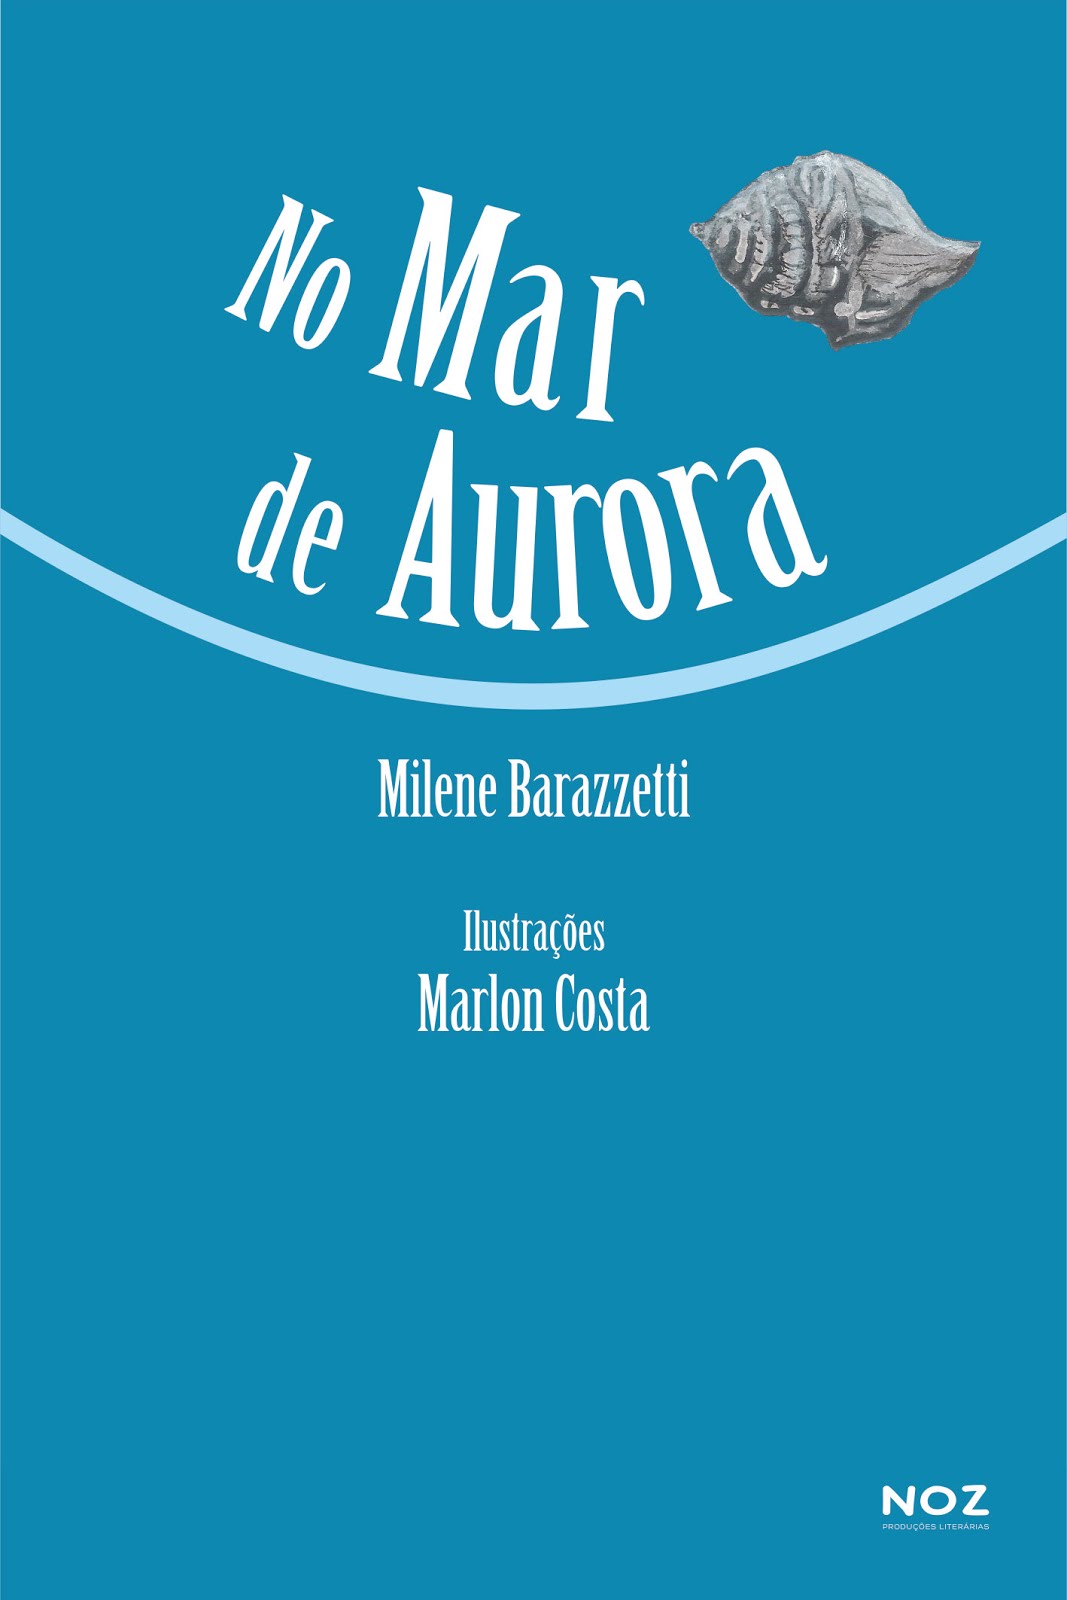 Livro "No Mar de Aurora"